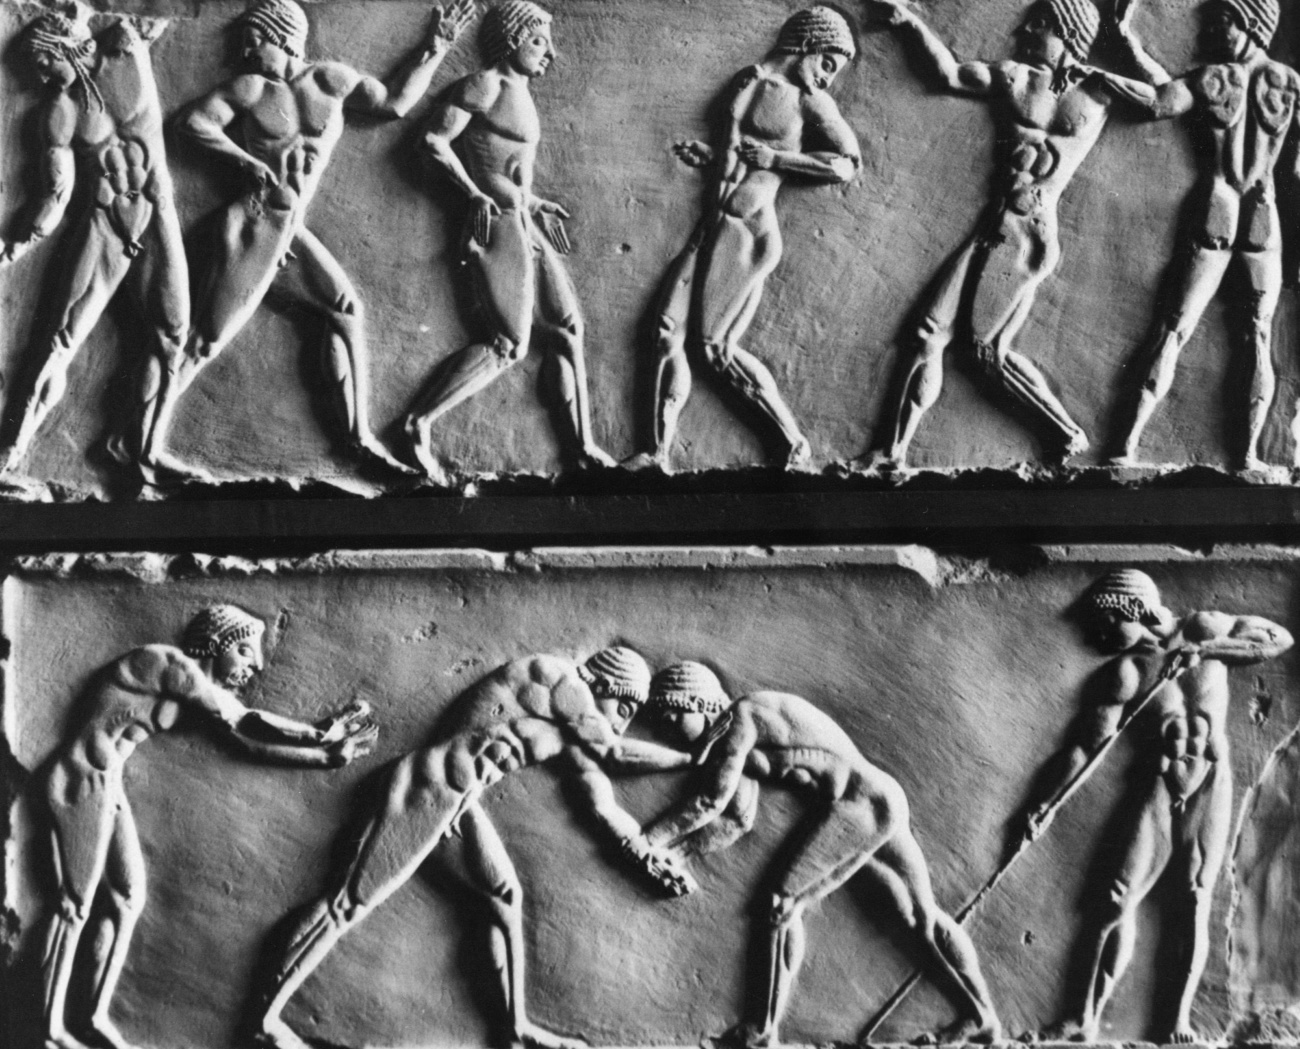 Un relief historique montre des personnes pratiquant un sport